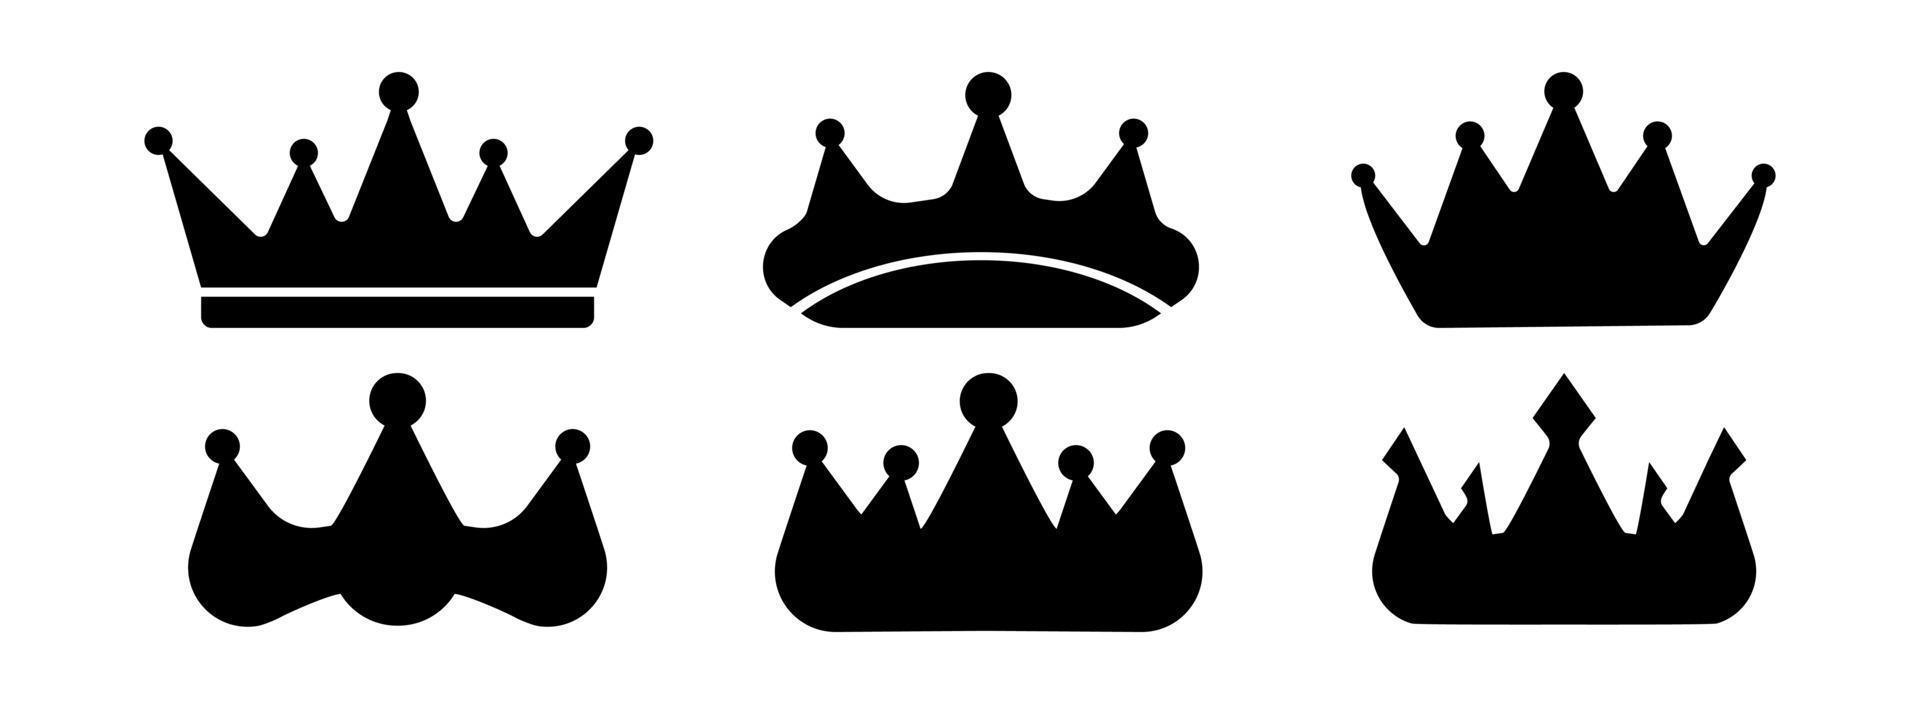 icone della corona. regina re corone lusso reale corona principessa tiara araldico vincitore premio gioiello royalty monarca nero piatto silhouette set. grande set di icone vettoriali re corone su sfondo bianco.